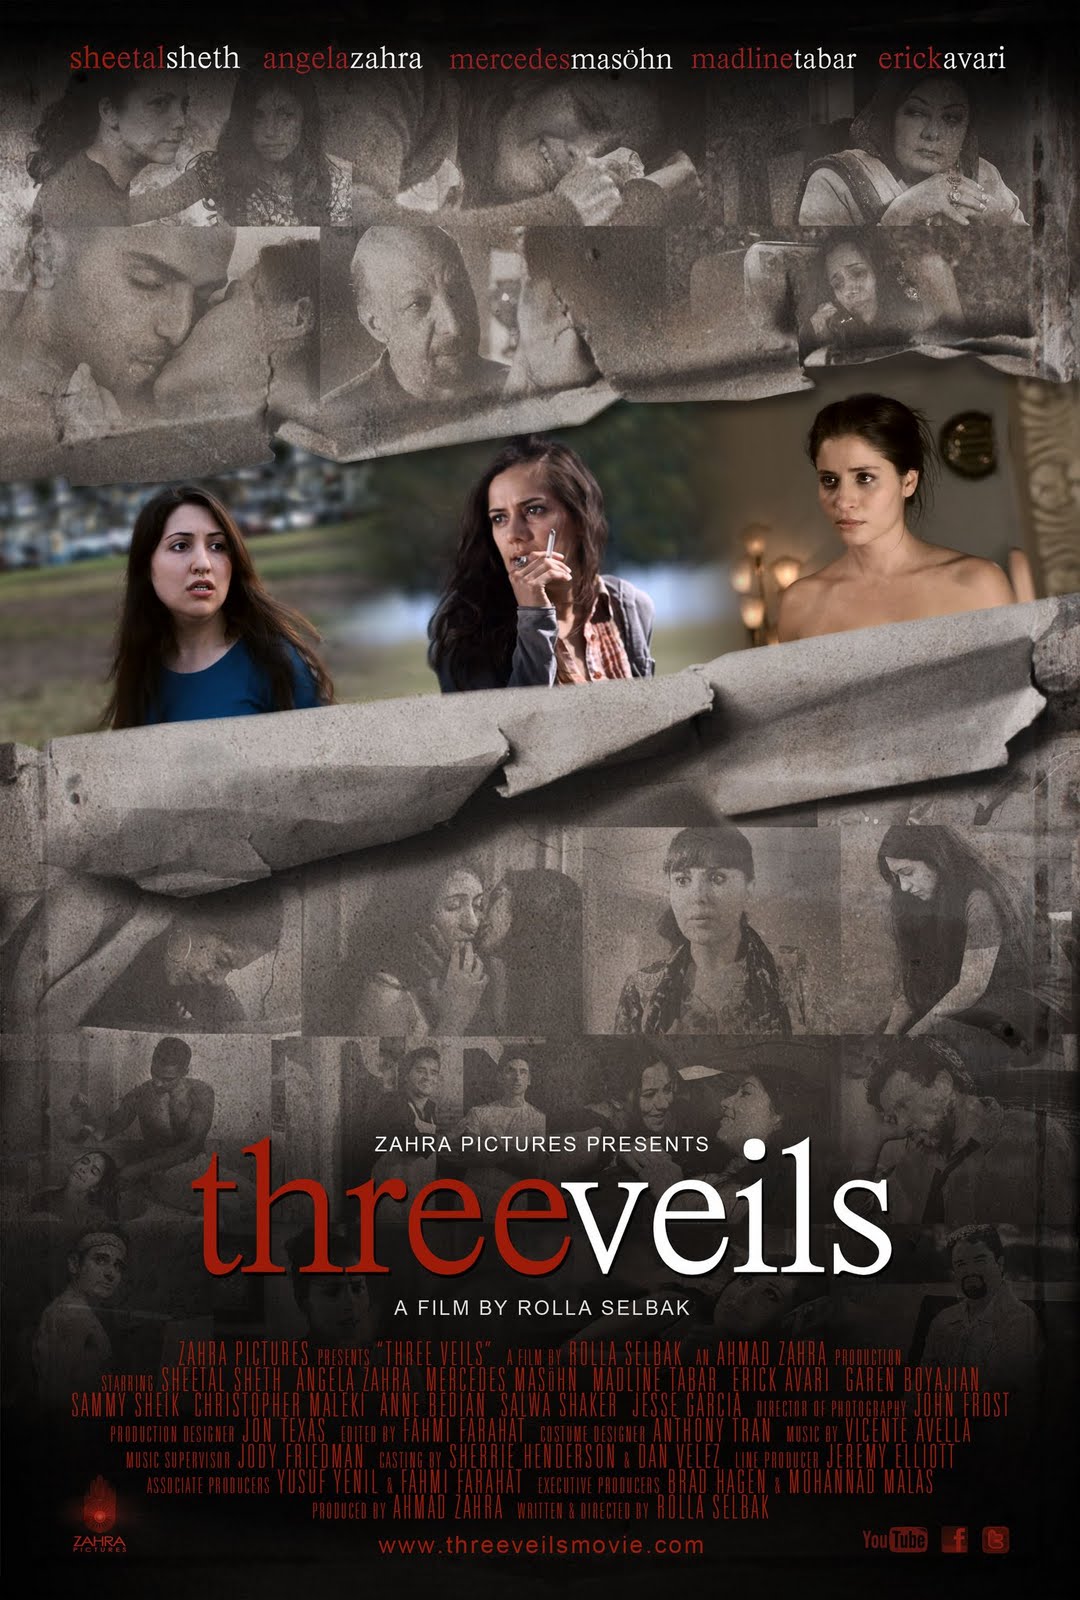 Three Veils movie